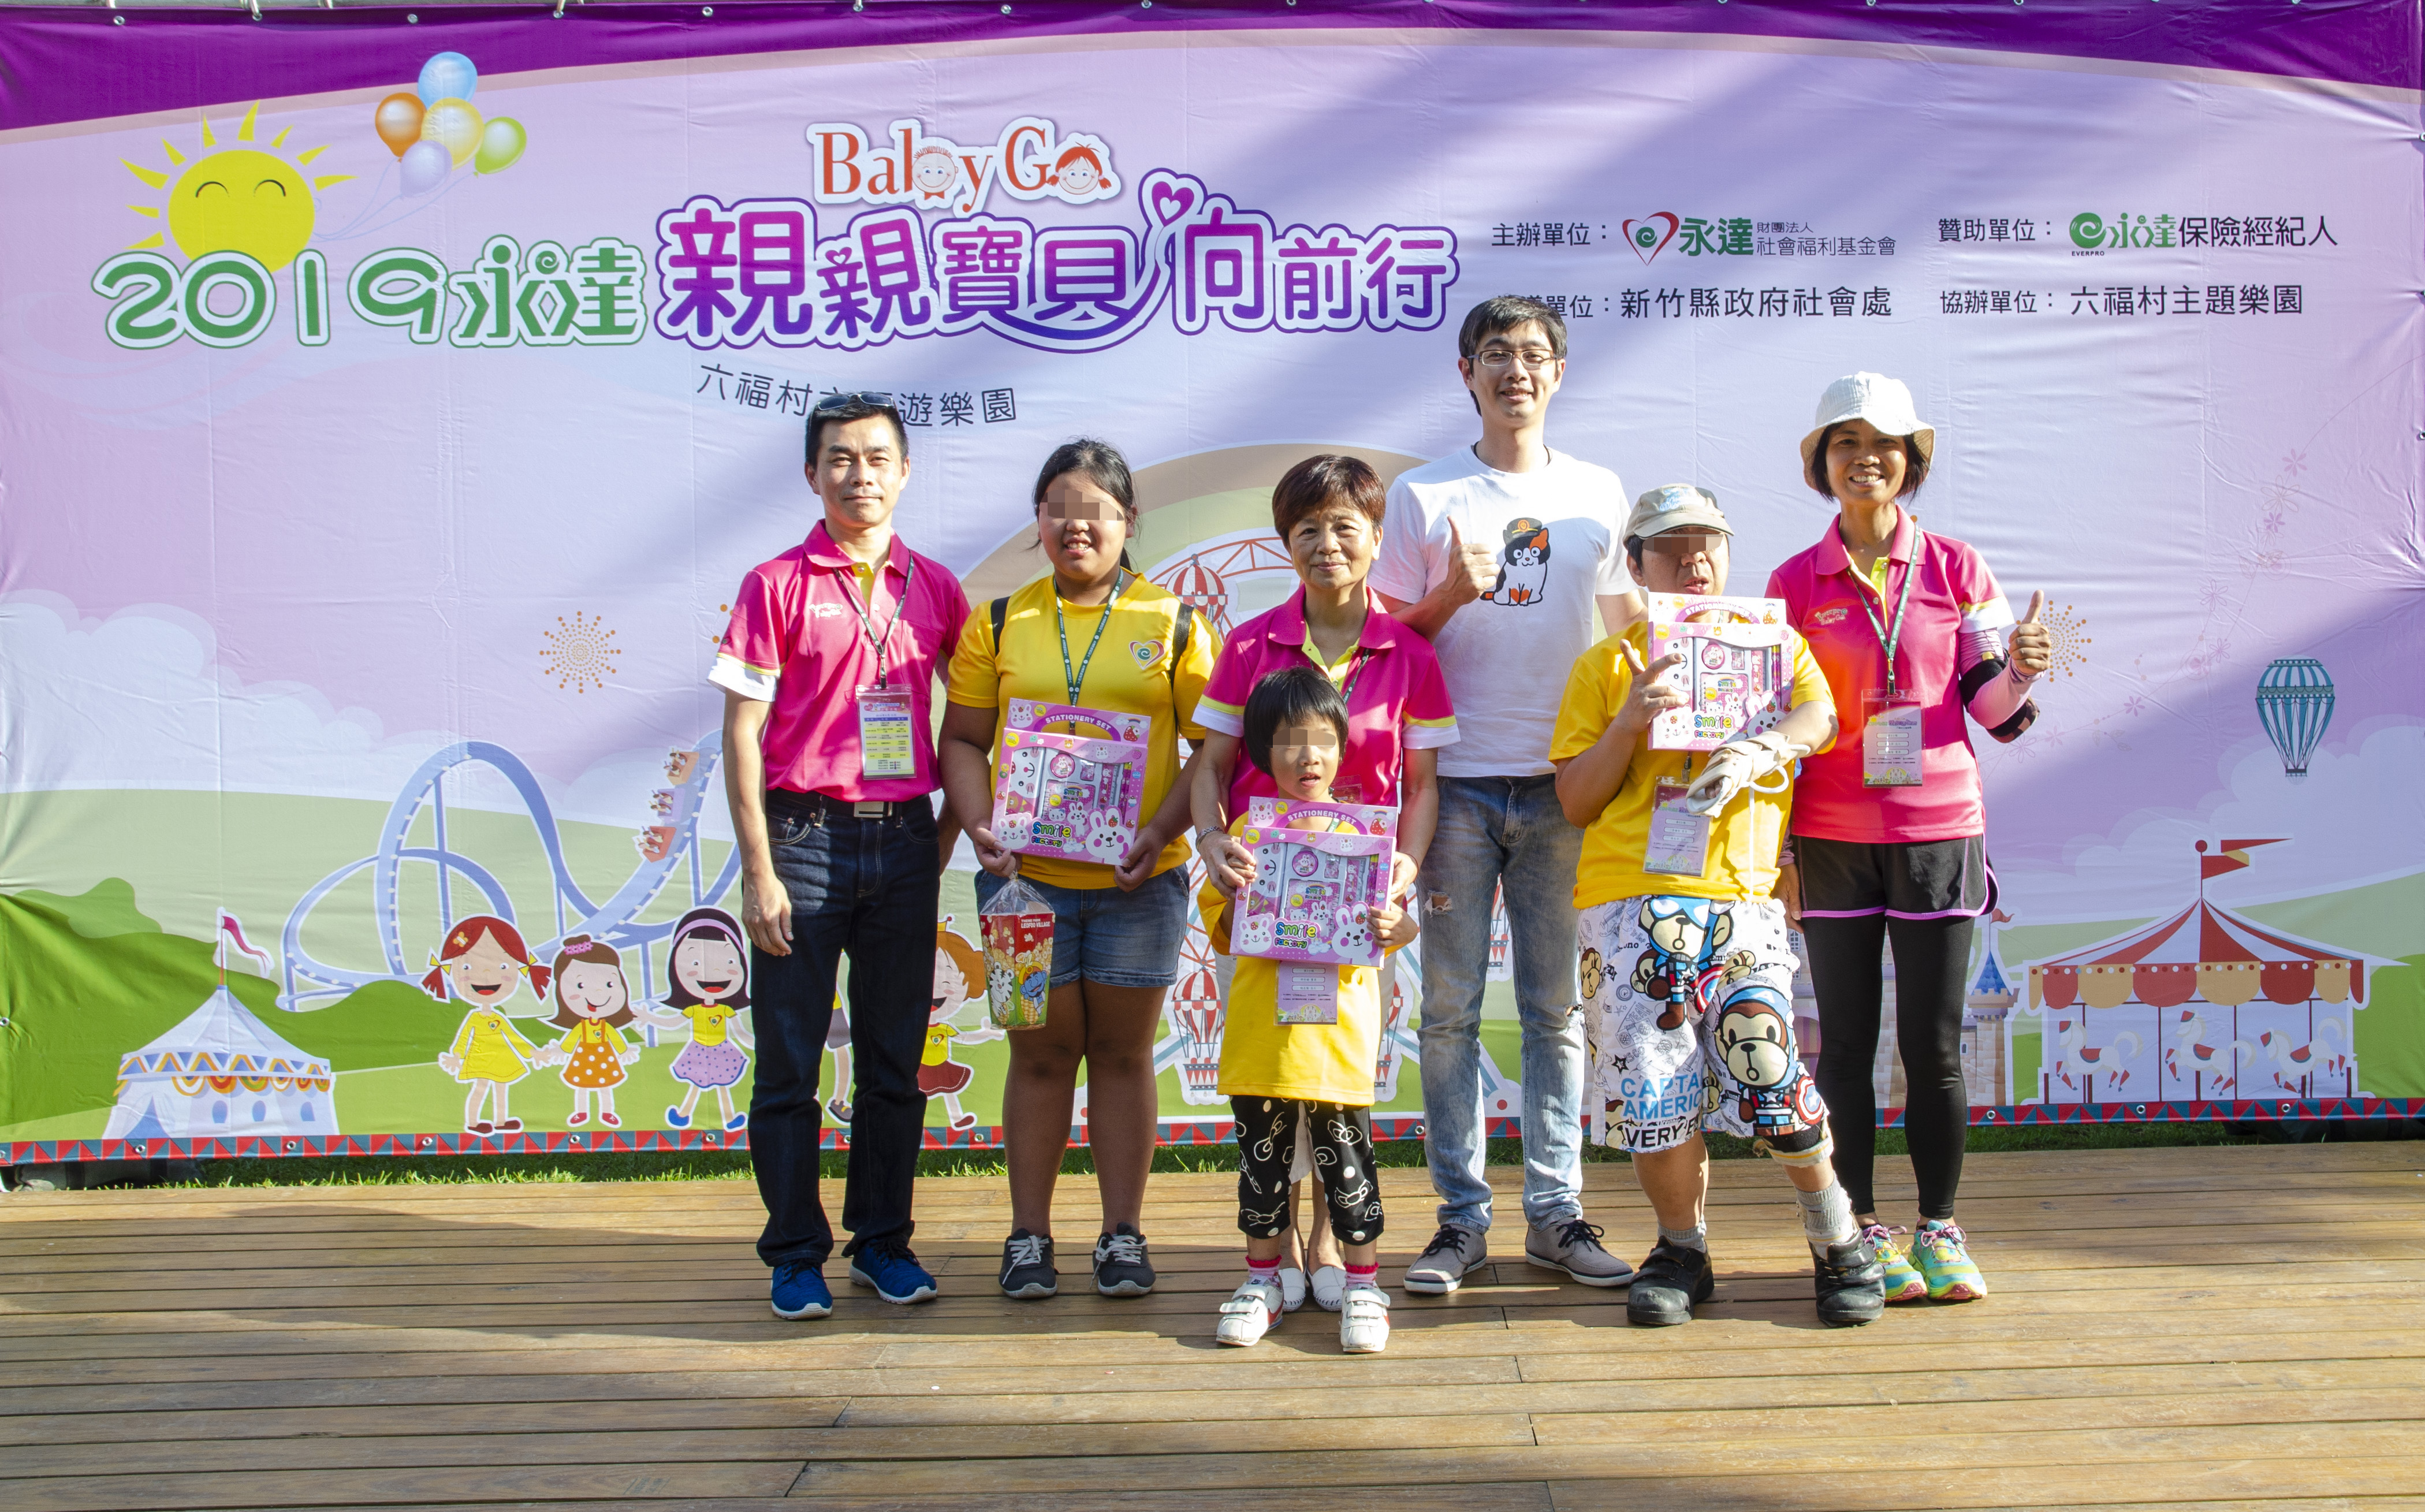 傅泓捷業務協理(右三)頒獎給上台分享的寶貝及志工們。